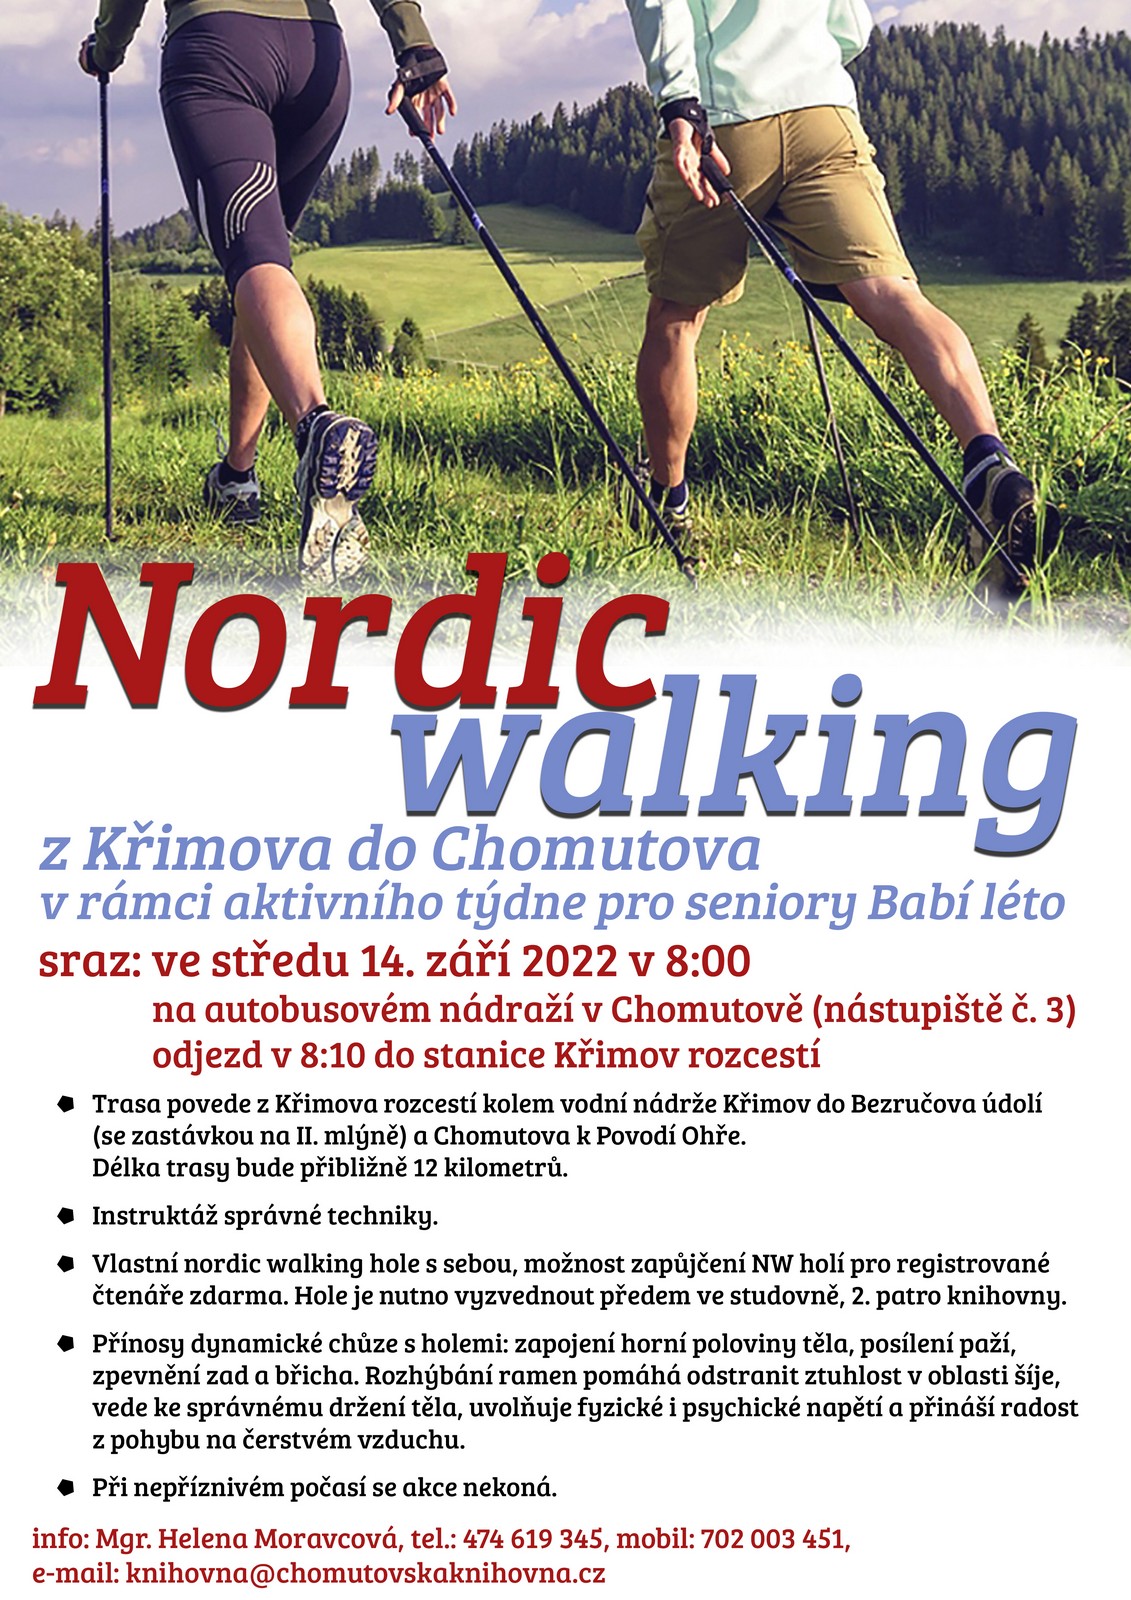 Babi leto Nordic walking